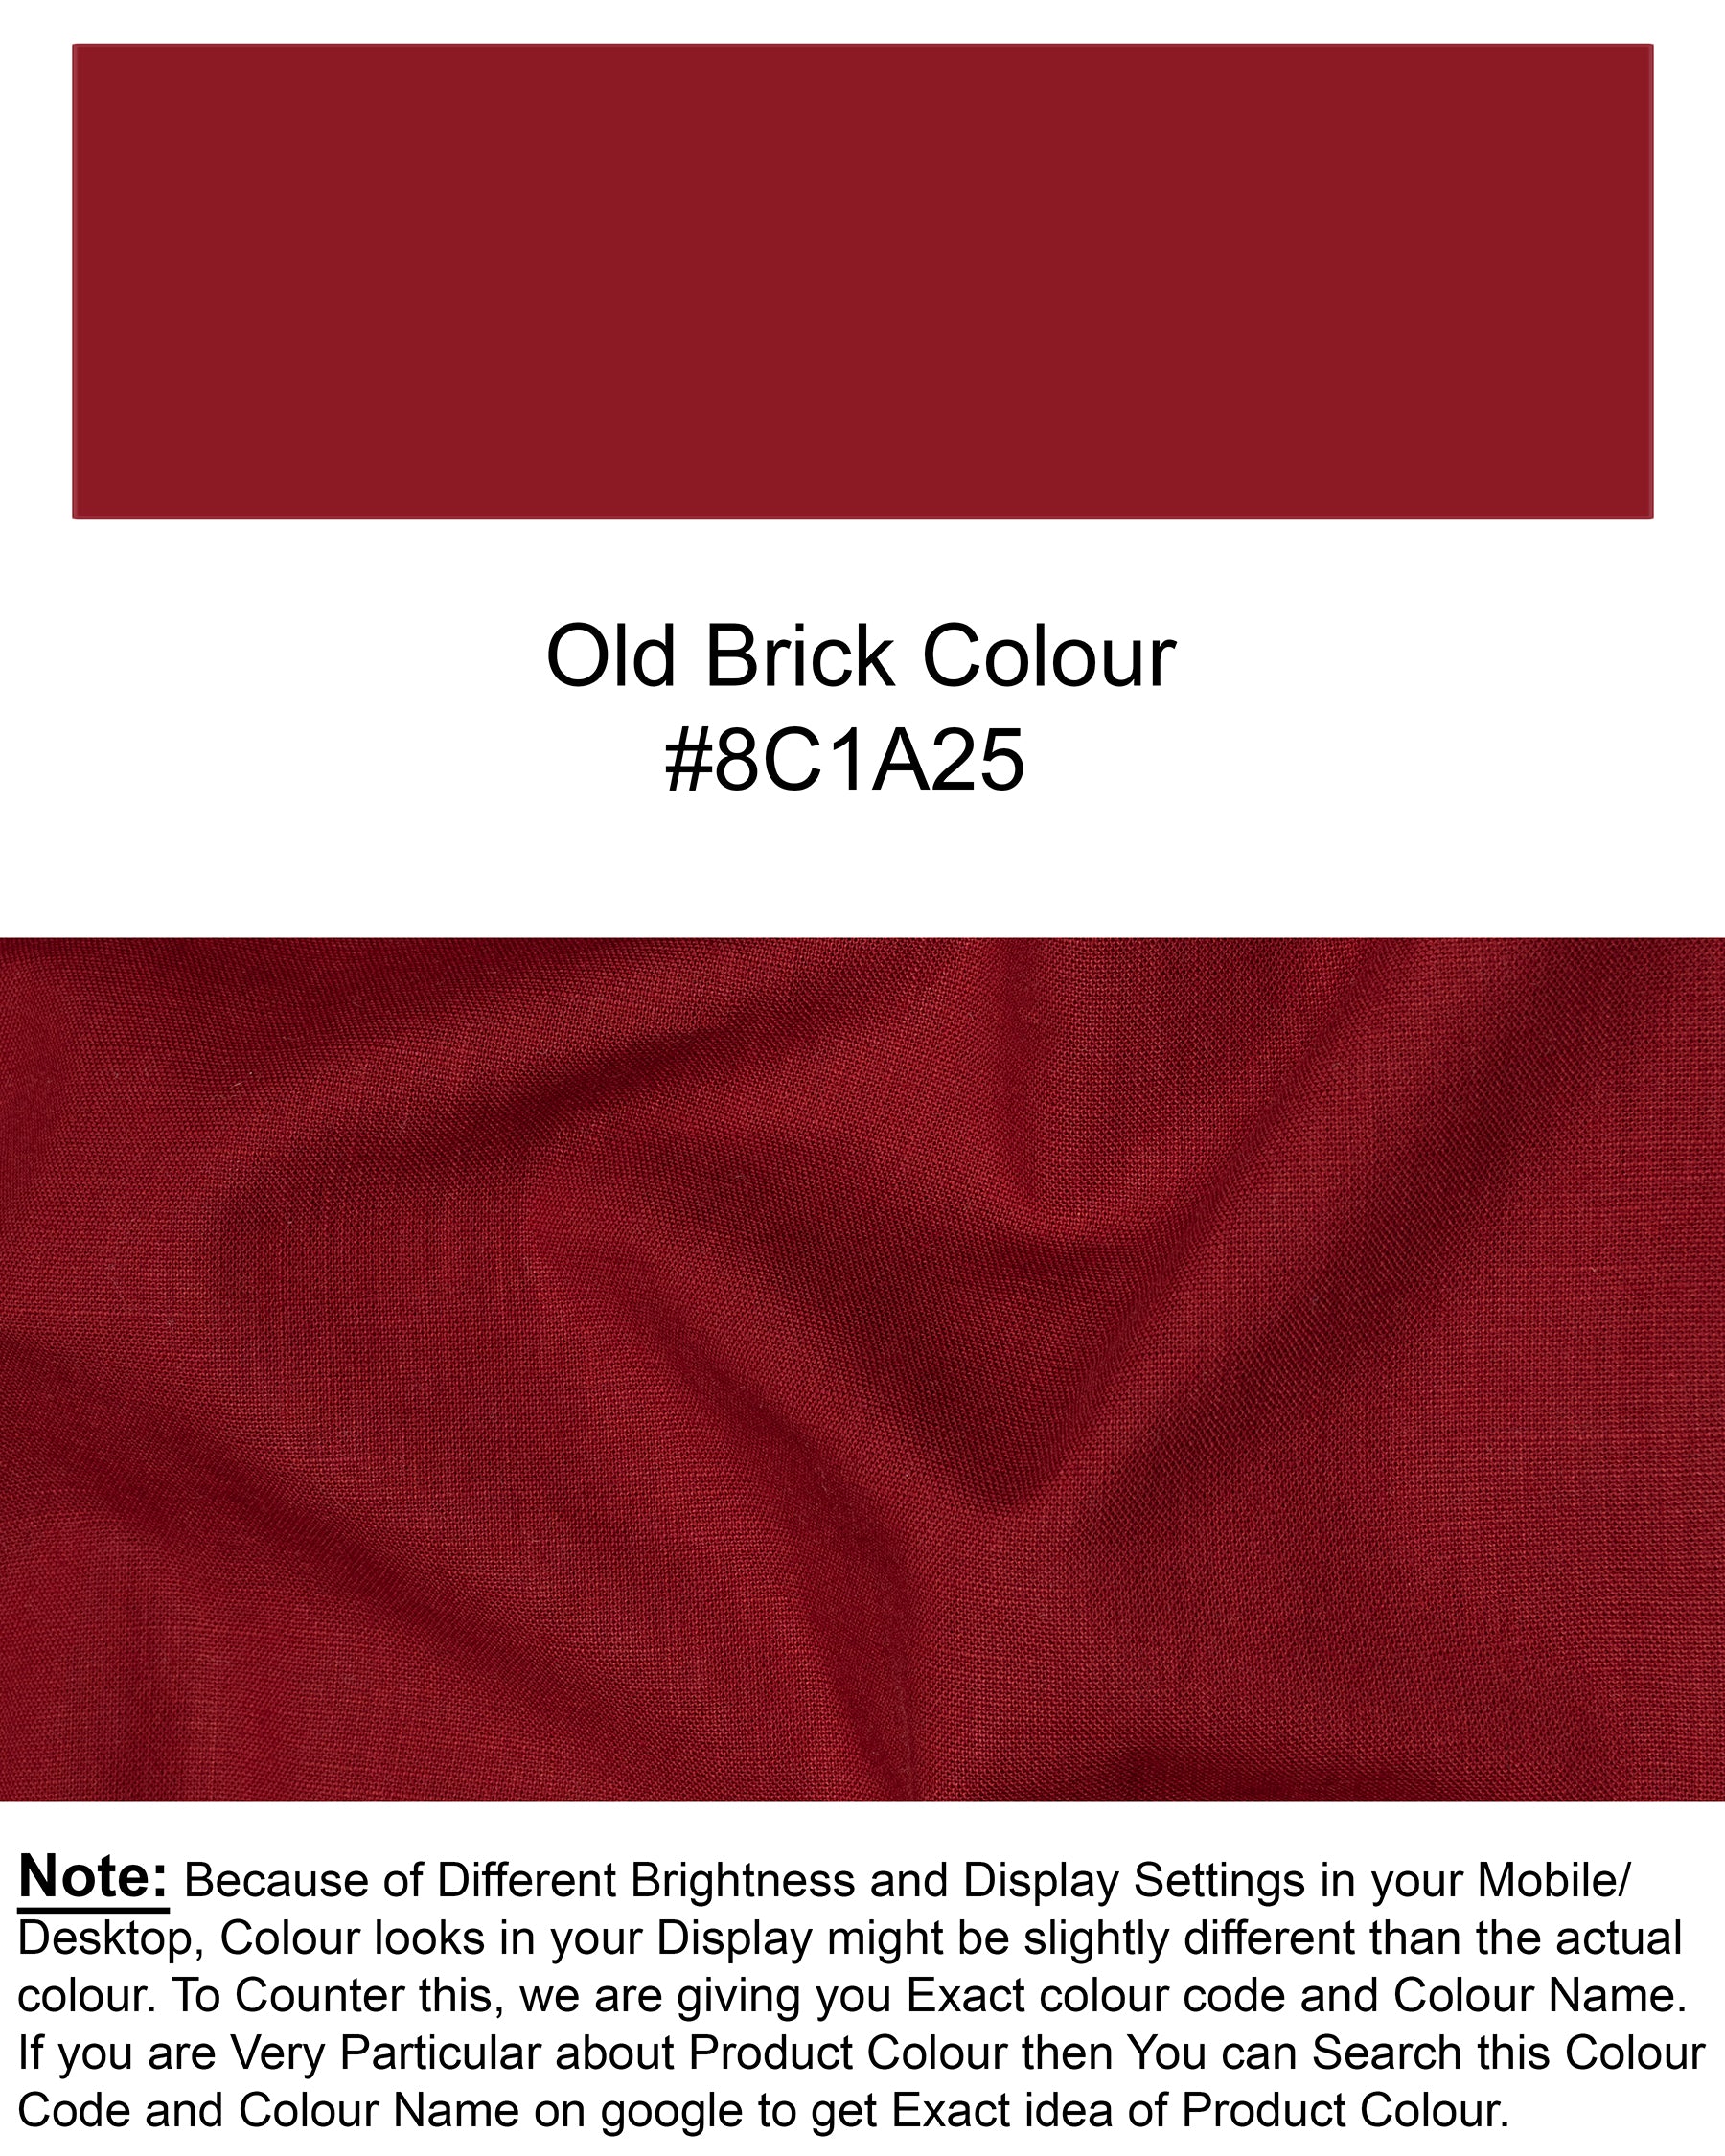 Old Brick Red Heavyweight Luxurious Linen Shirt 6597-38,6597-H-38,6597-39,6597-H-39,6597-40,6597-H-40,6597-42,6597-H-42,6597-44,6597-H-44,6597-46,6597-H-46,6597-48,6597-H-48,6597-50,6597-H-50,6597-52,6597-H-52